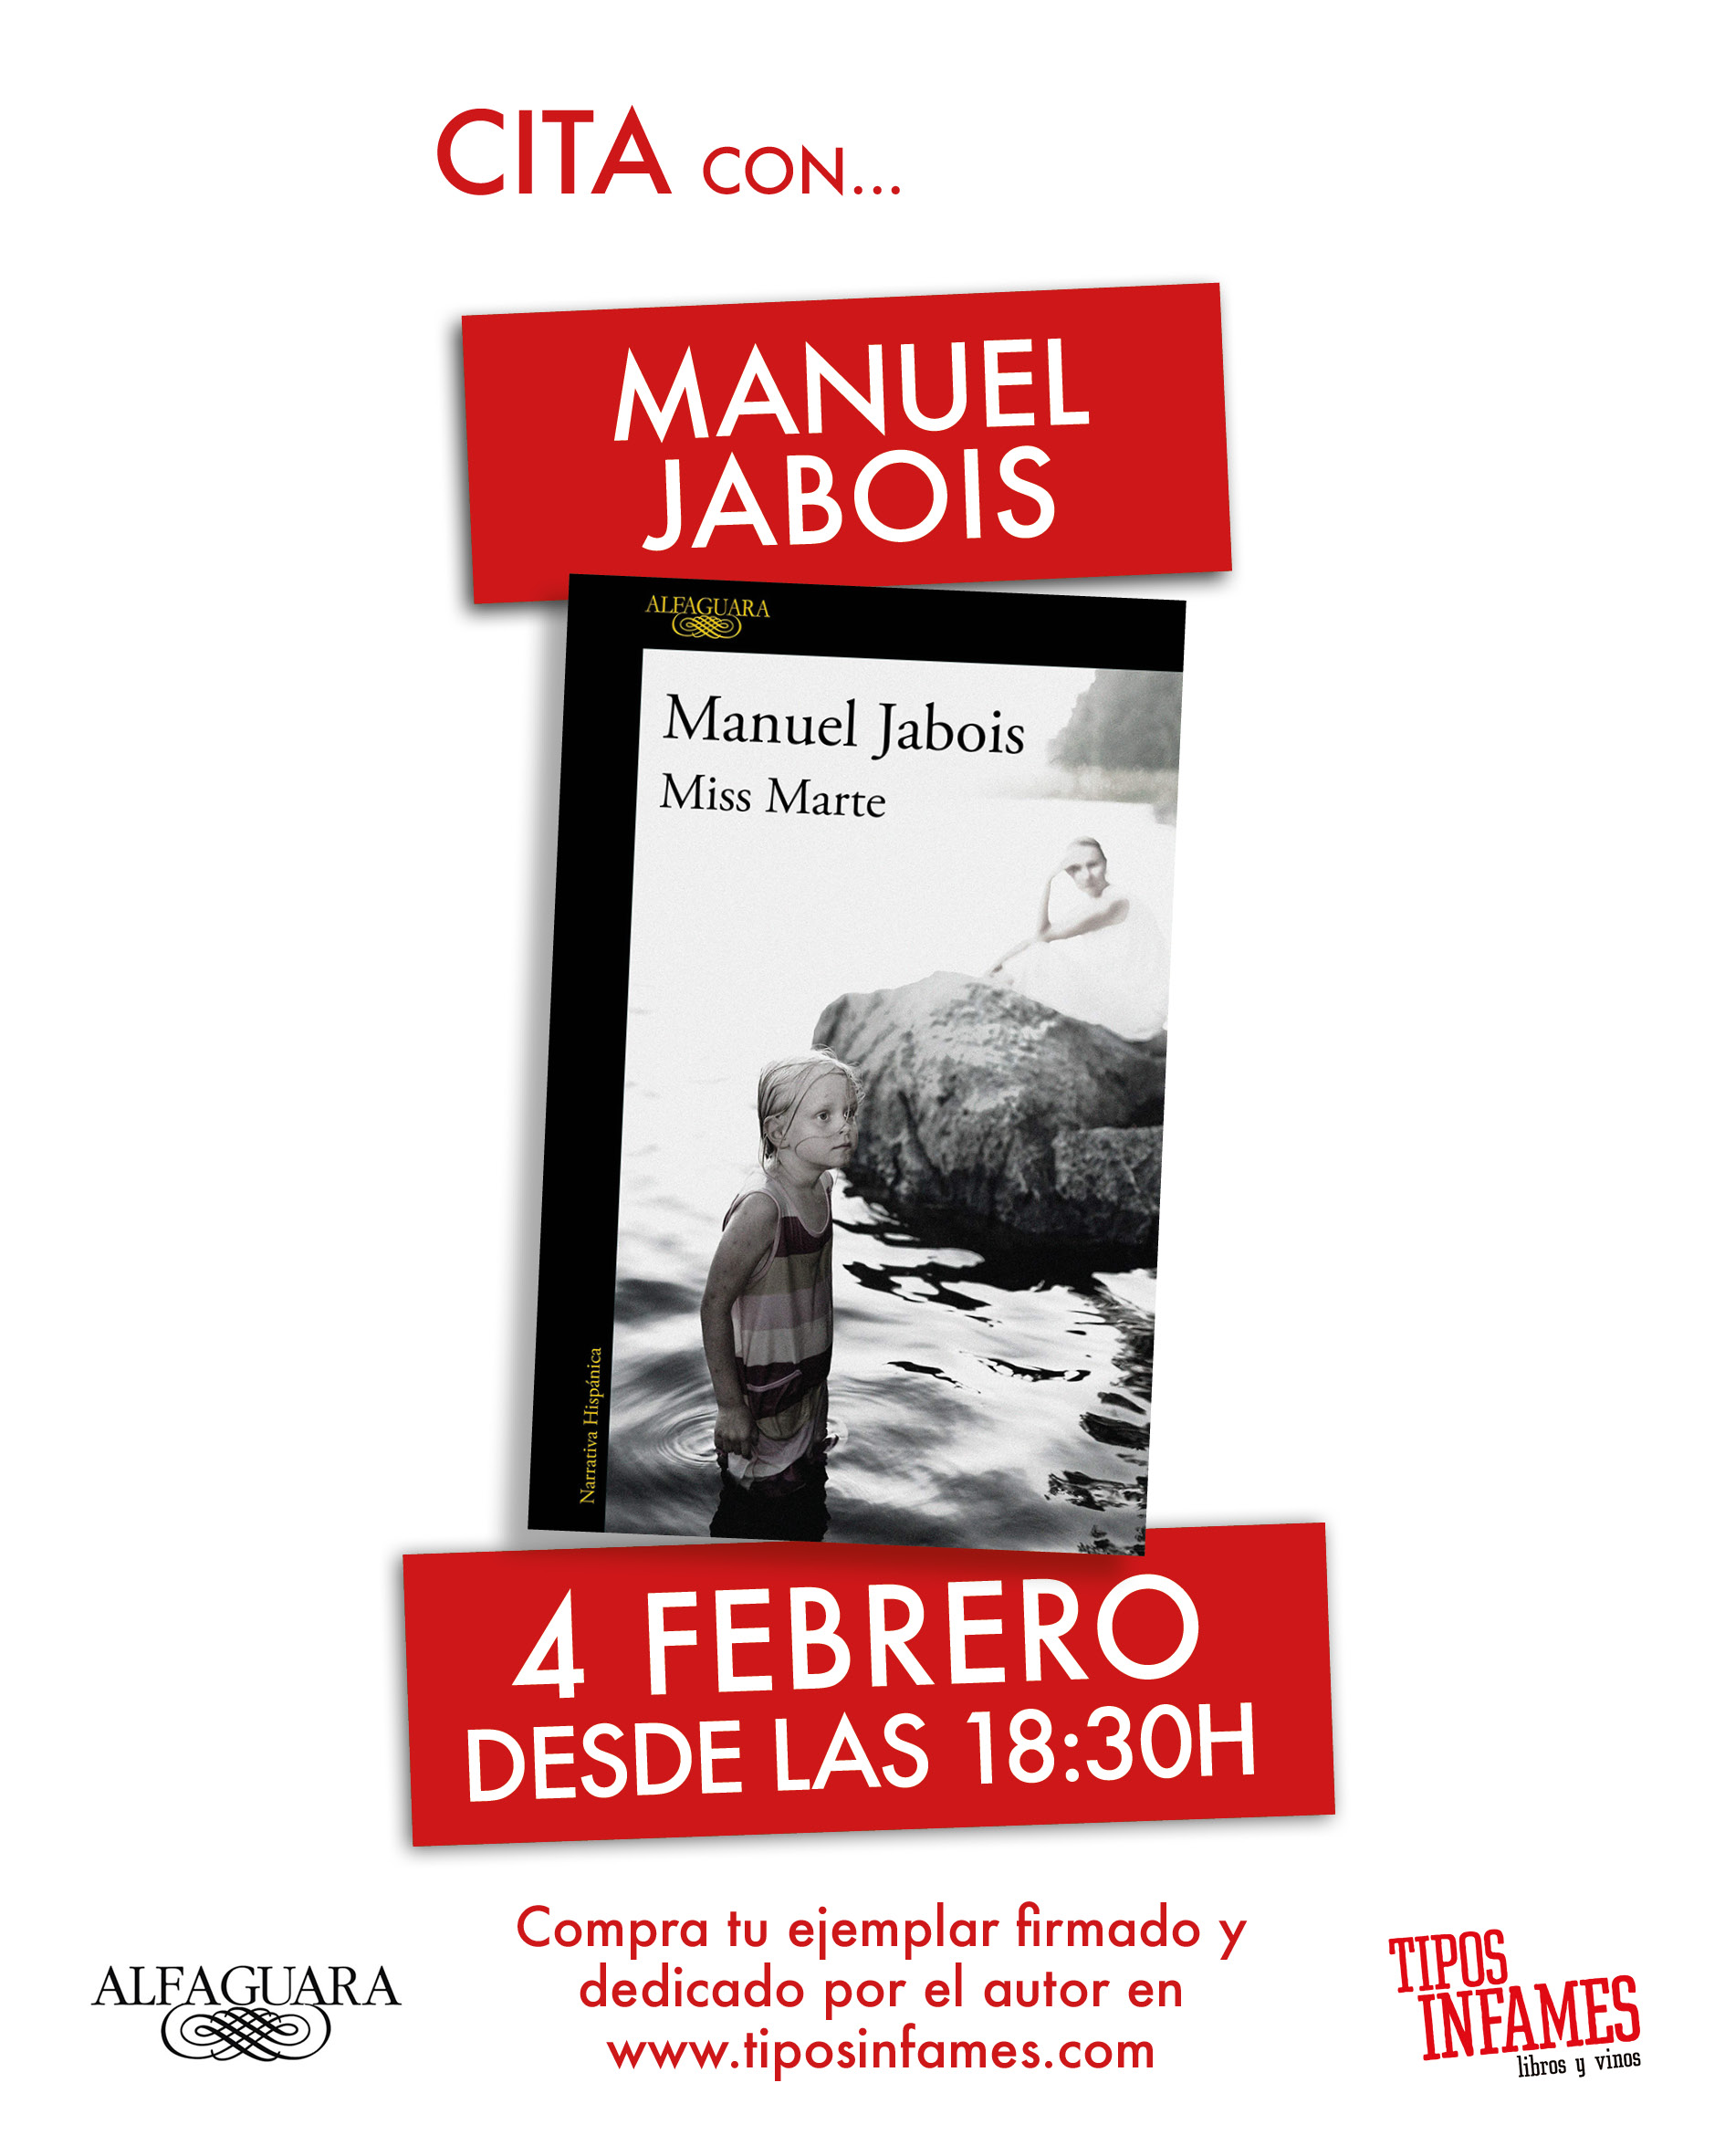 Cita con... Manuel Jabois